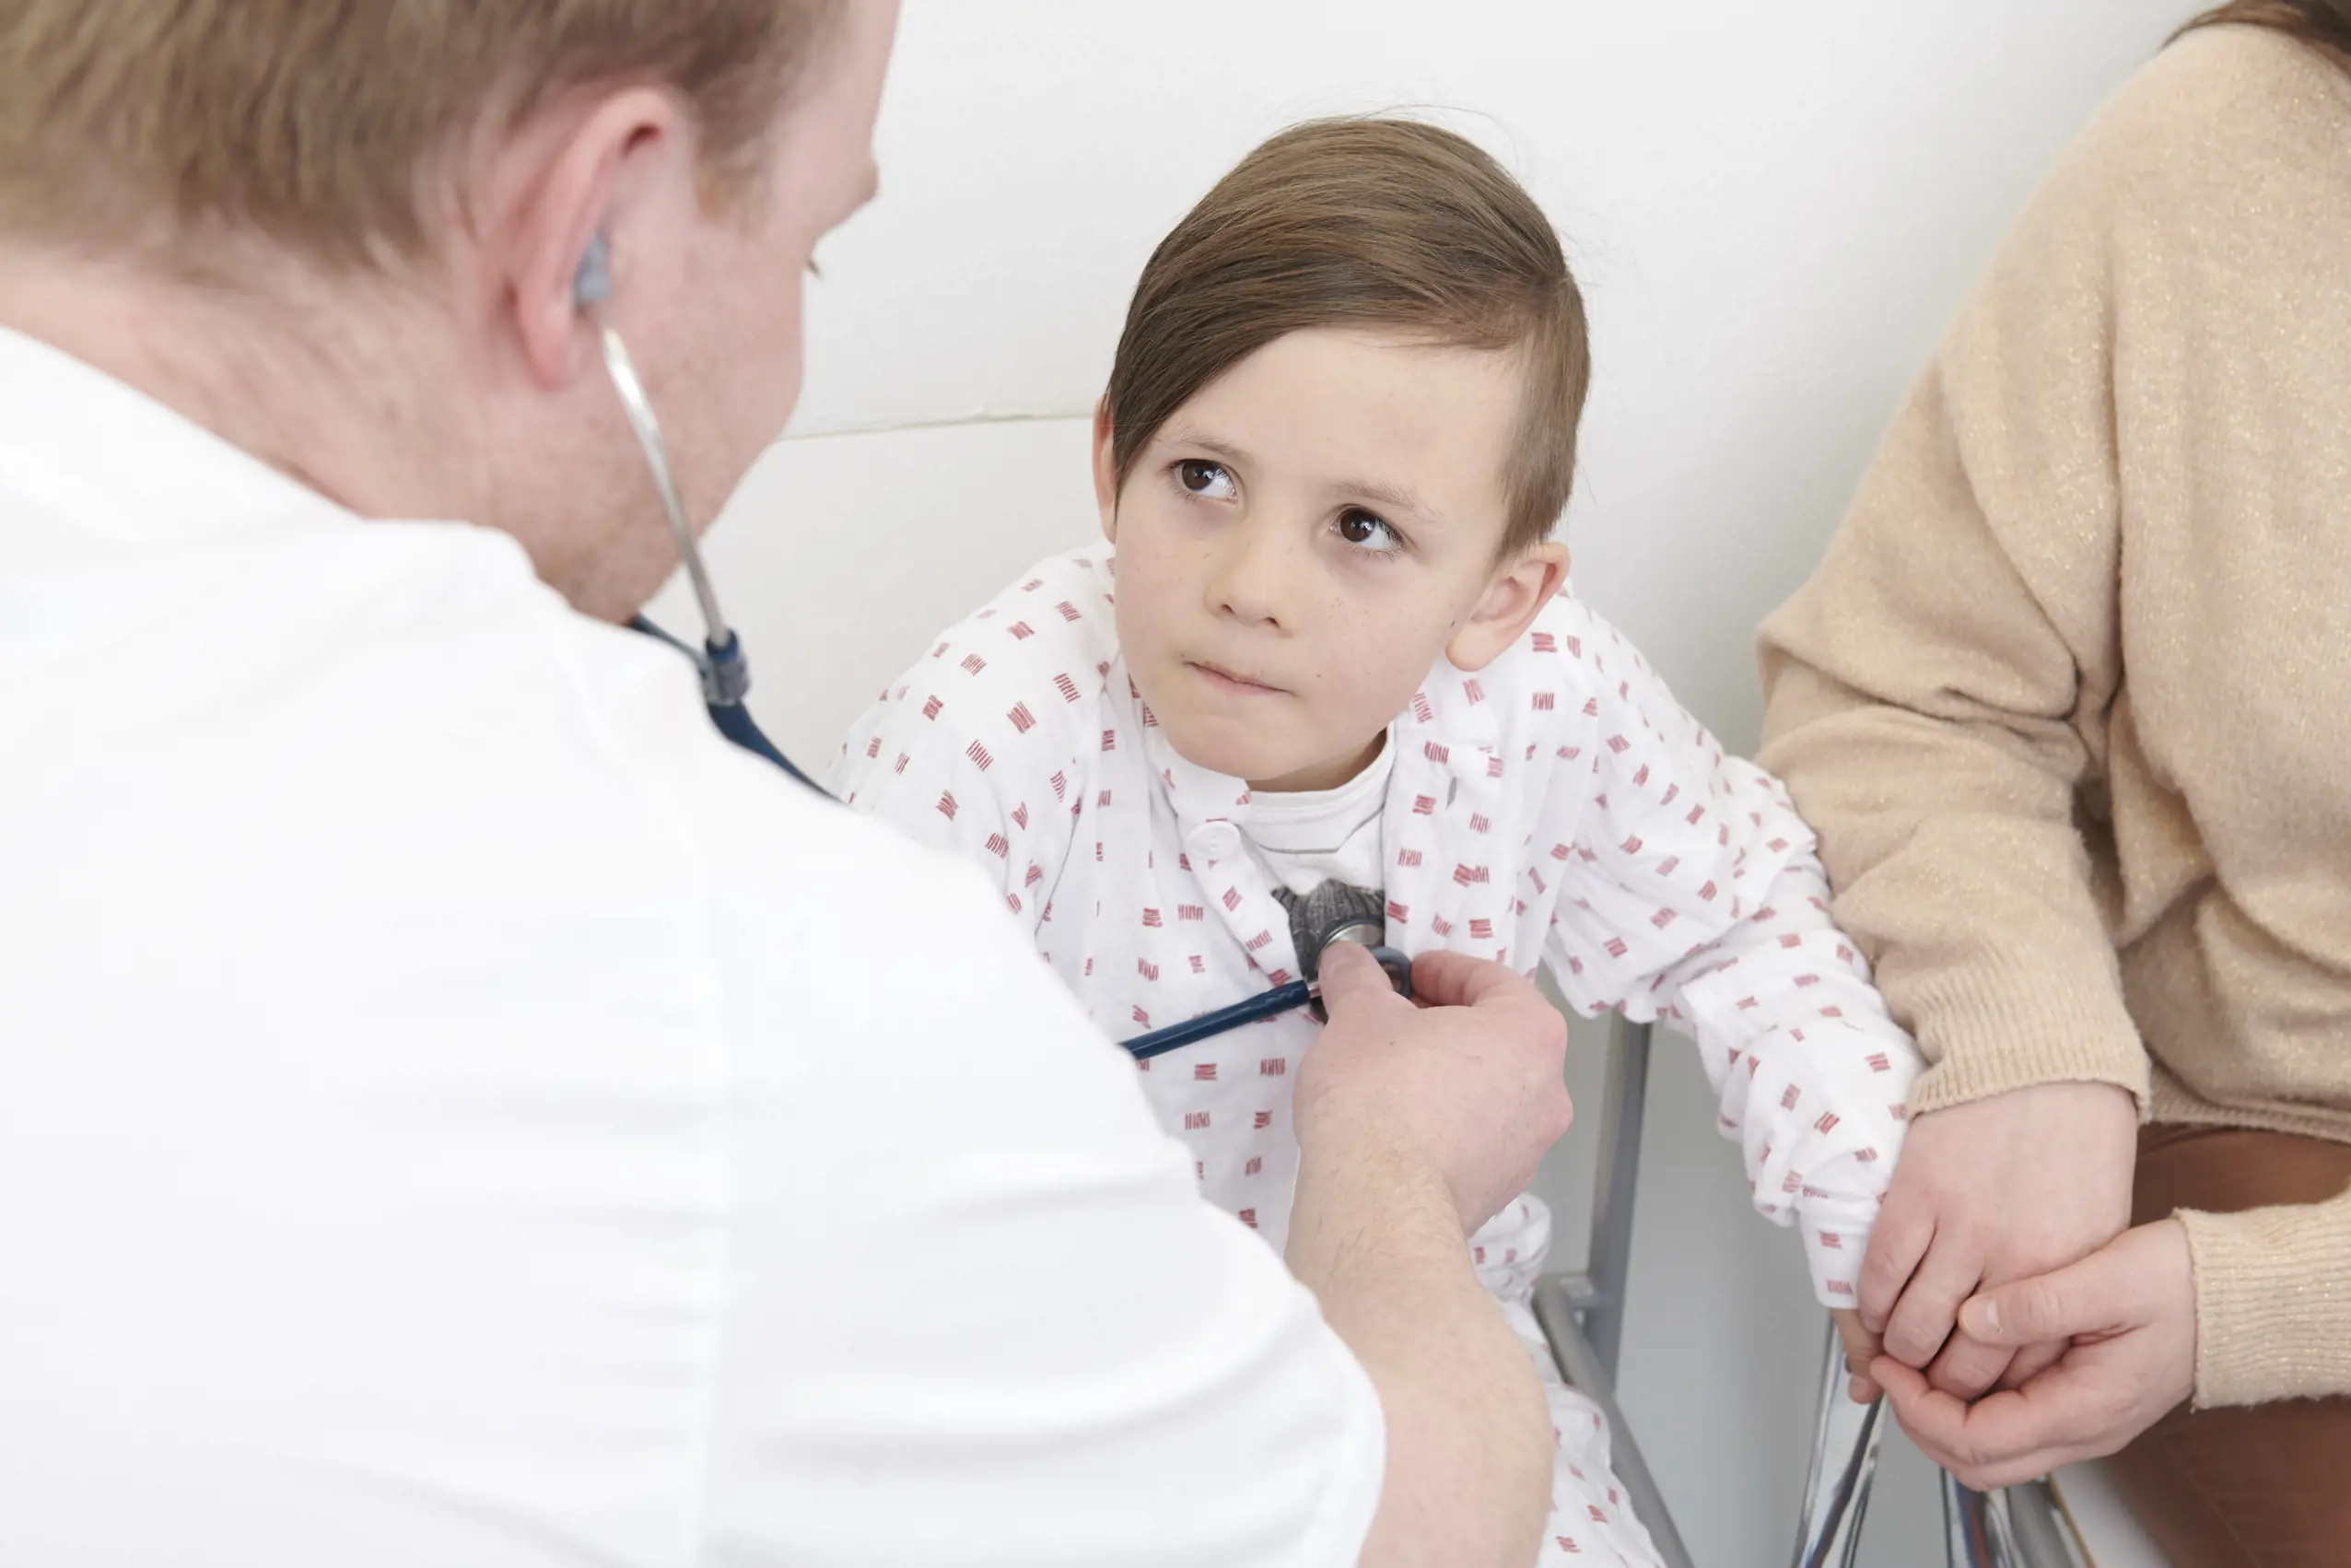 En lege som undersøker et barn